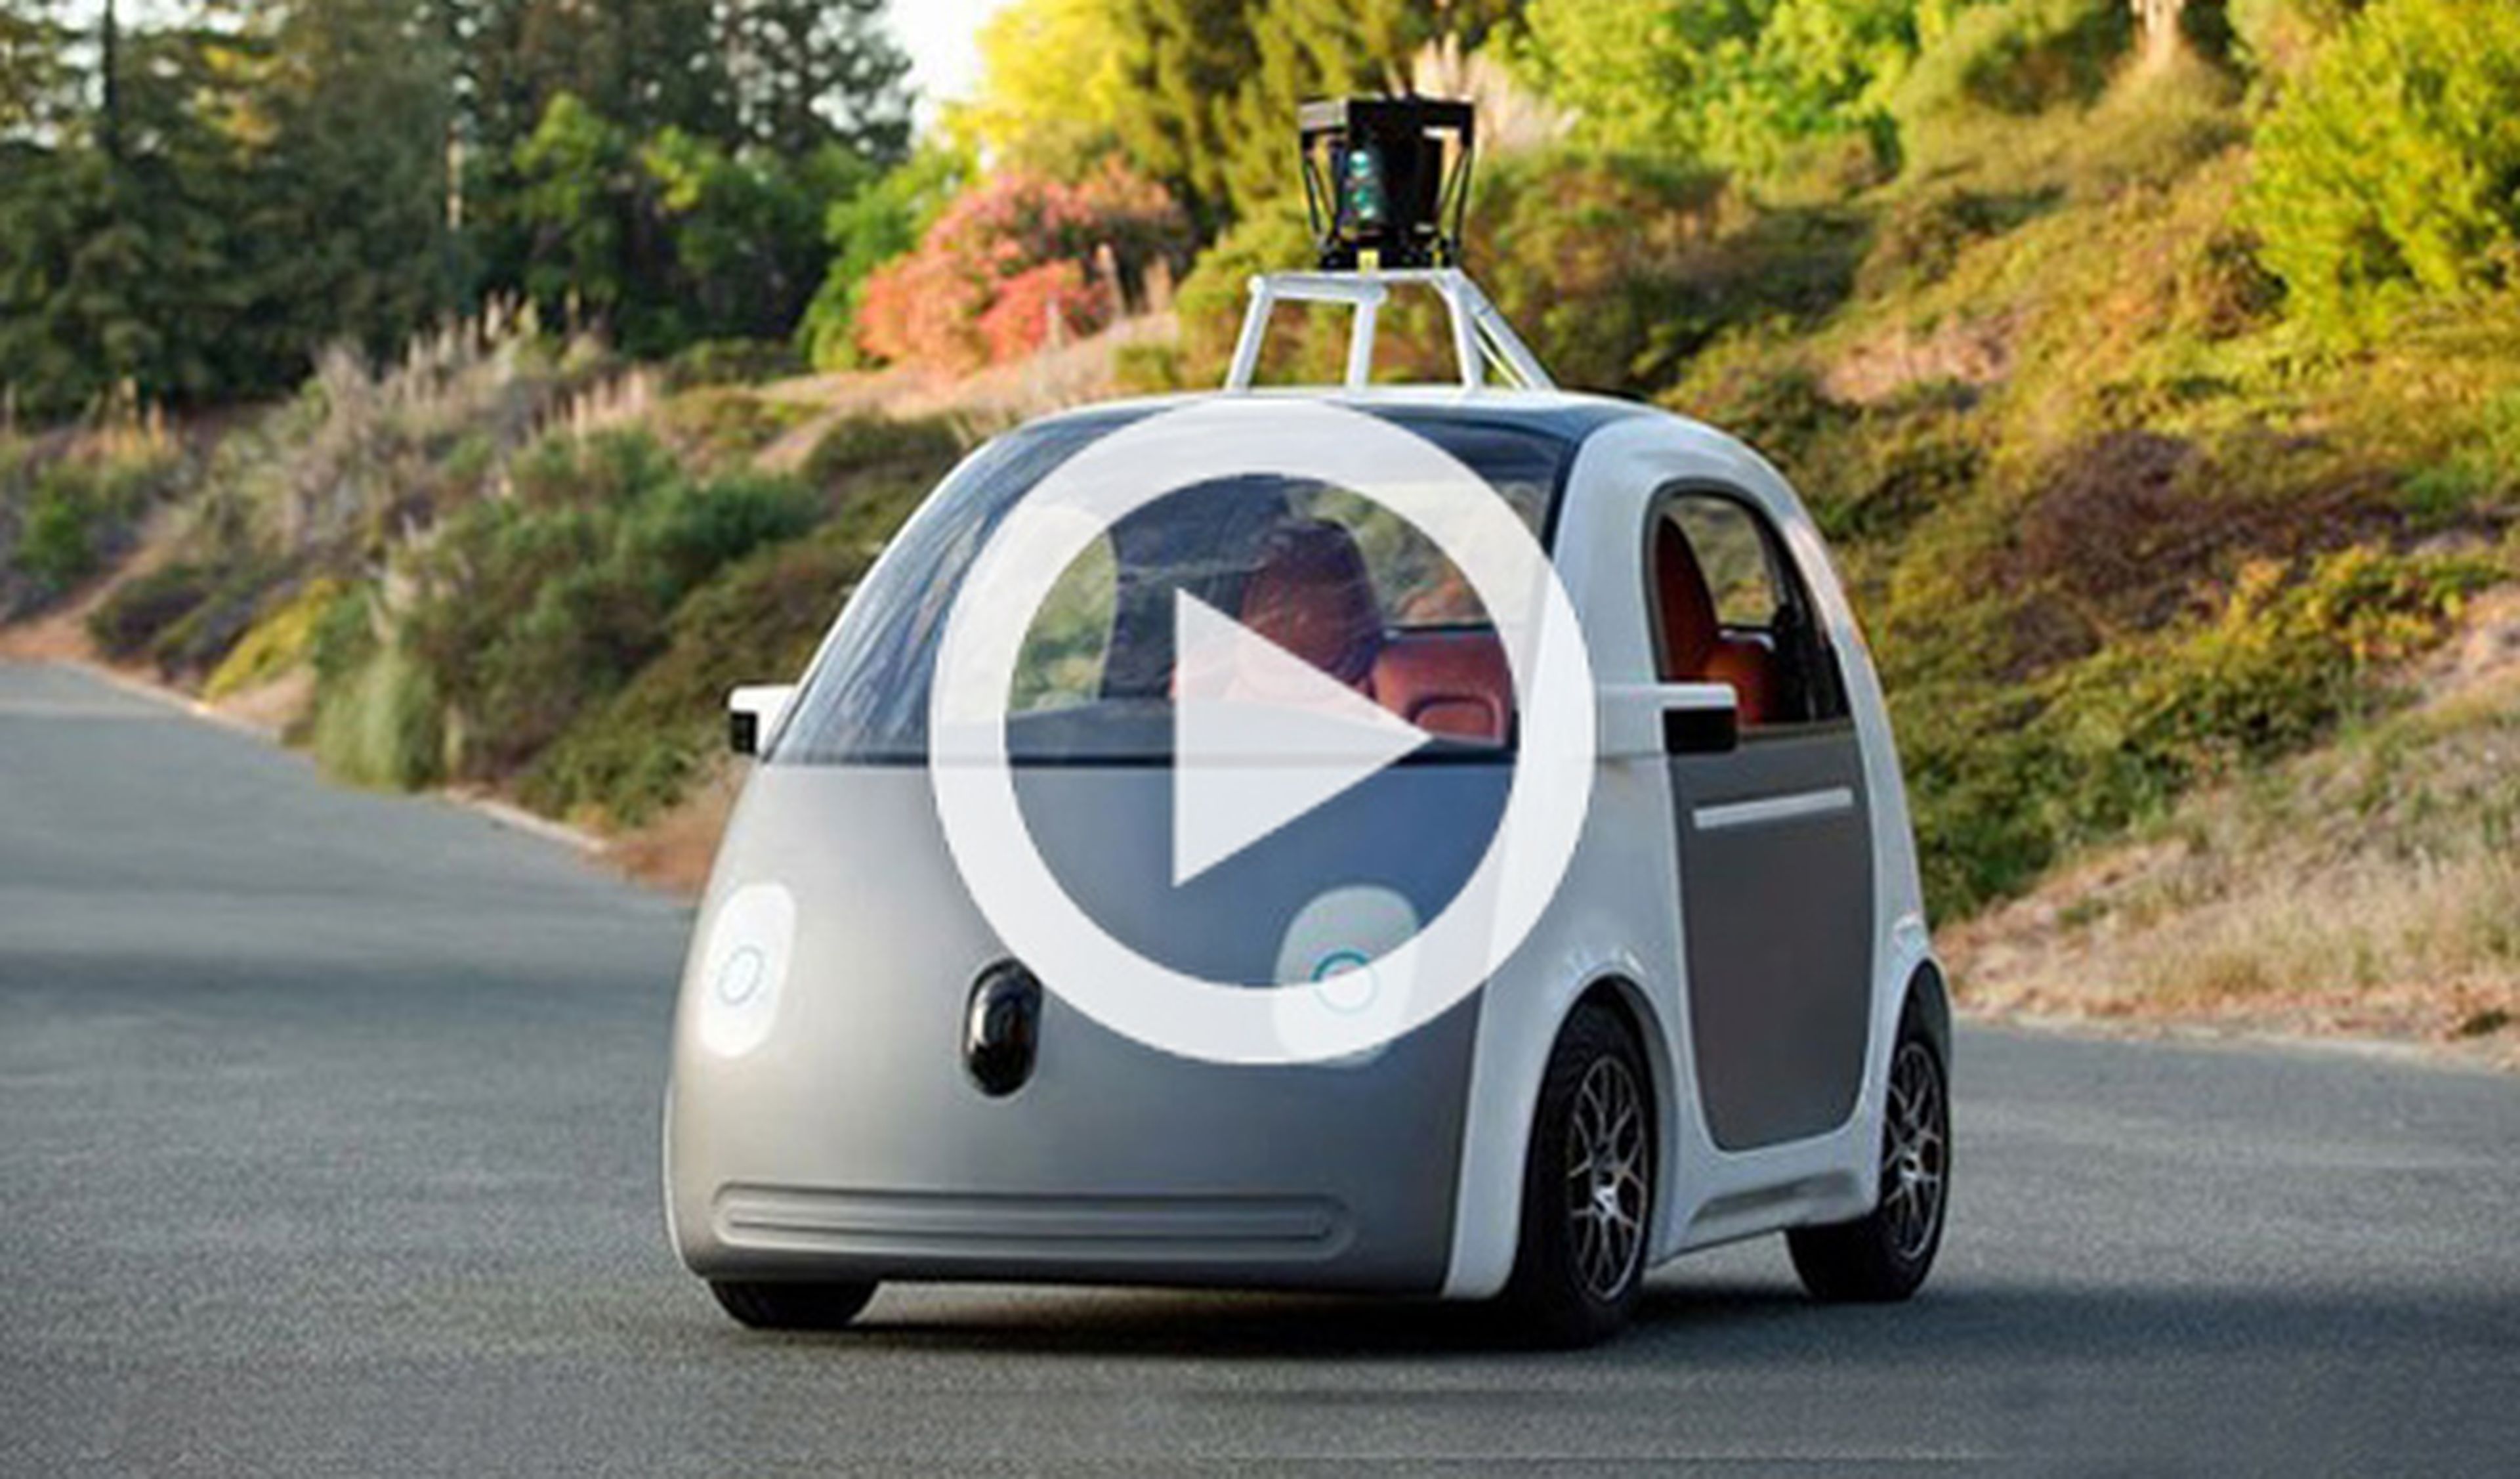 Coche de Google que conduce solo tendrá volante y pedales